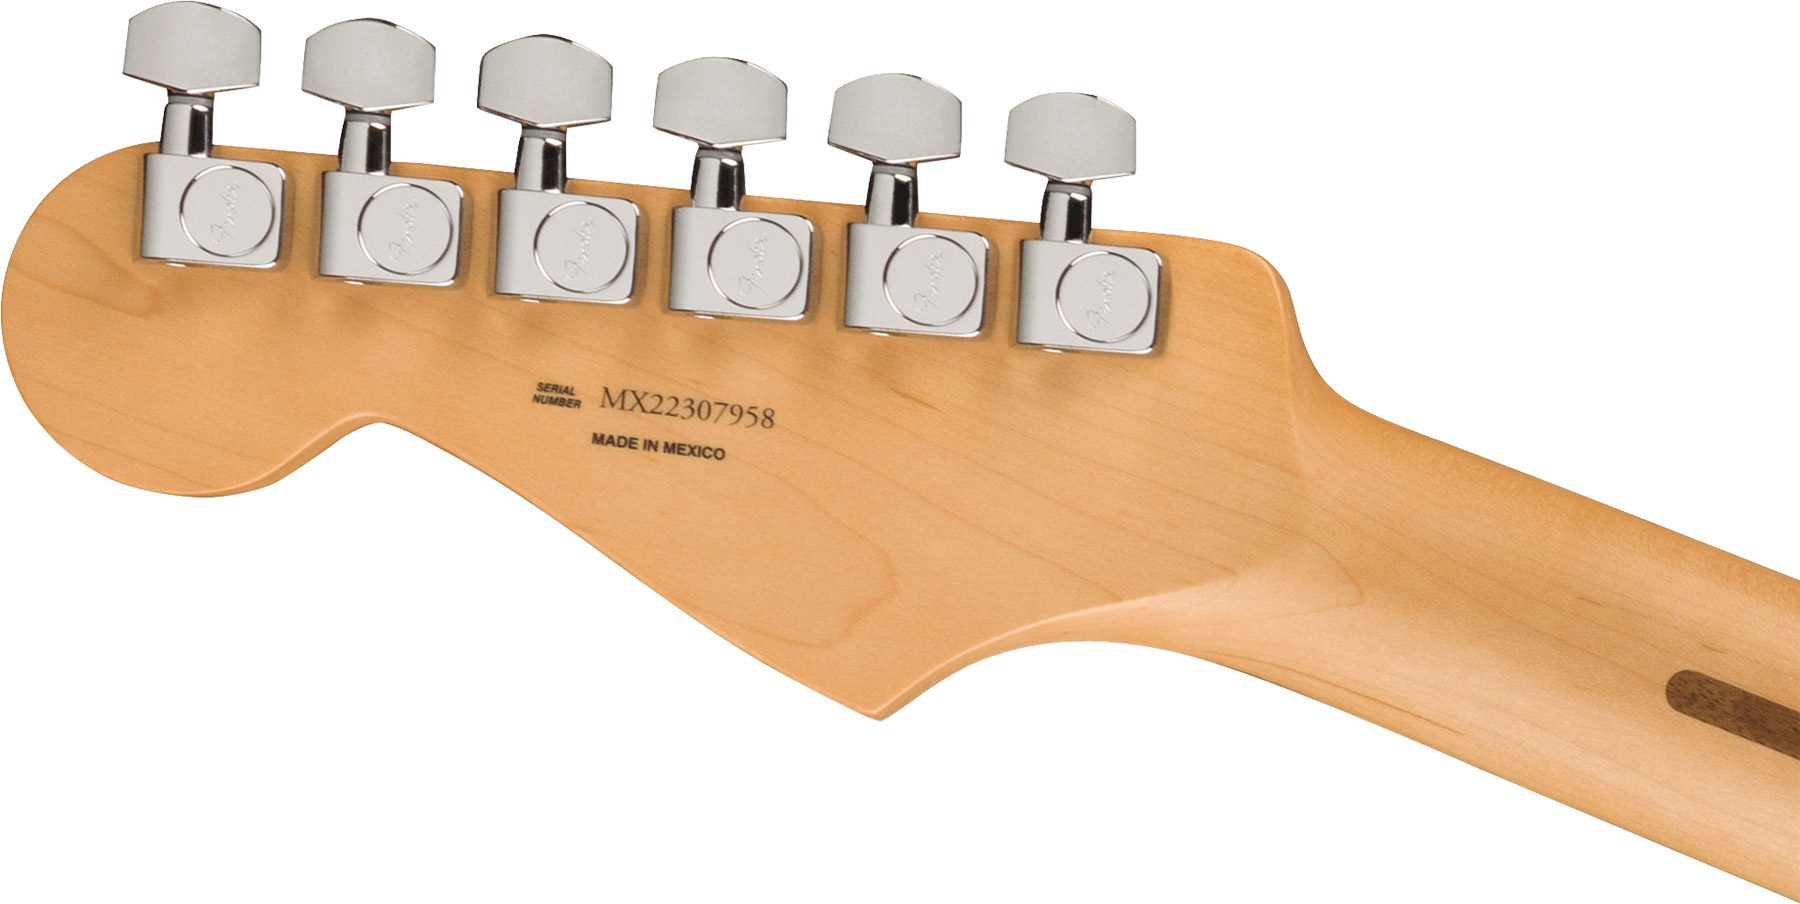 Fender Strat Player Mex 2023 3s Trem Pf - Seafoam Green - Elektrische gitaar in Str-vorm - Variation 3